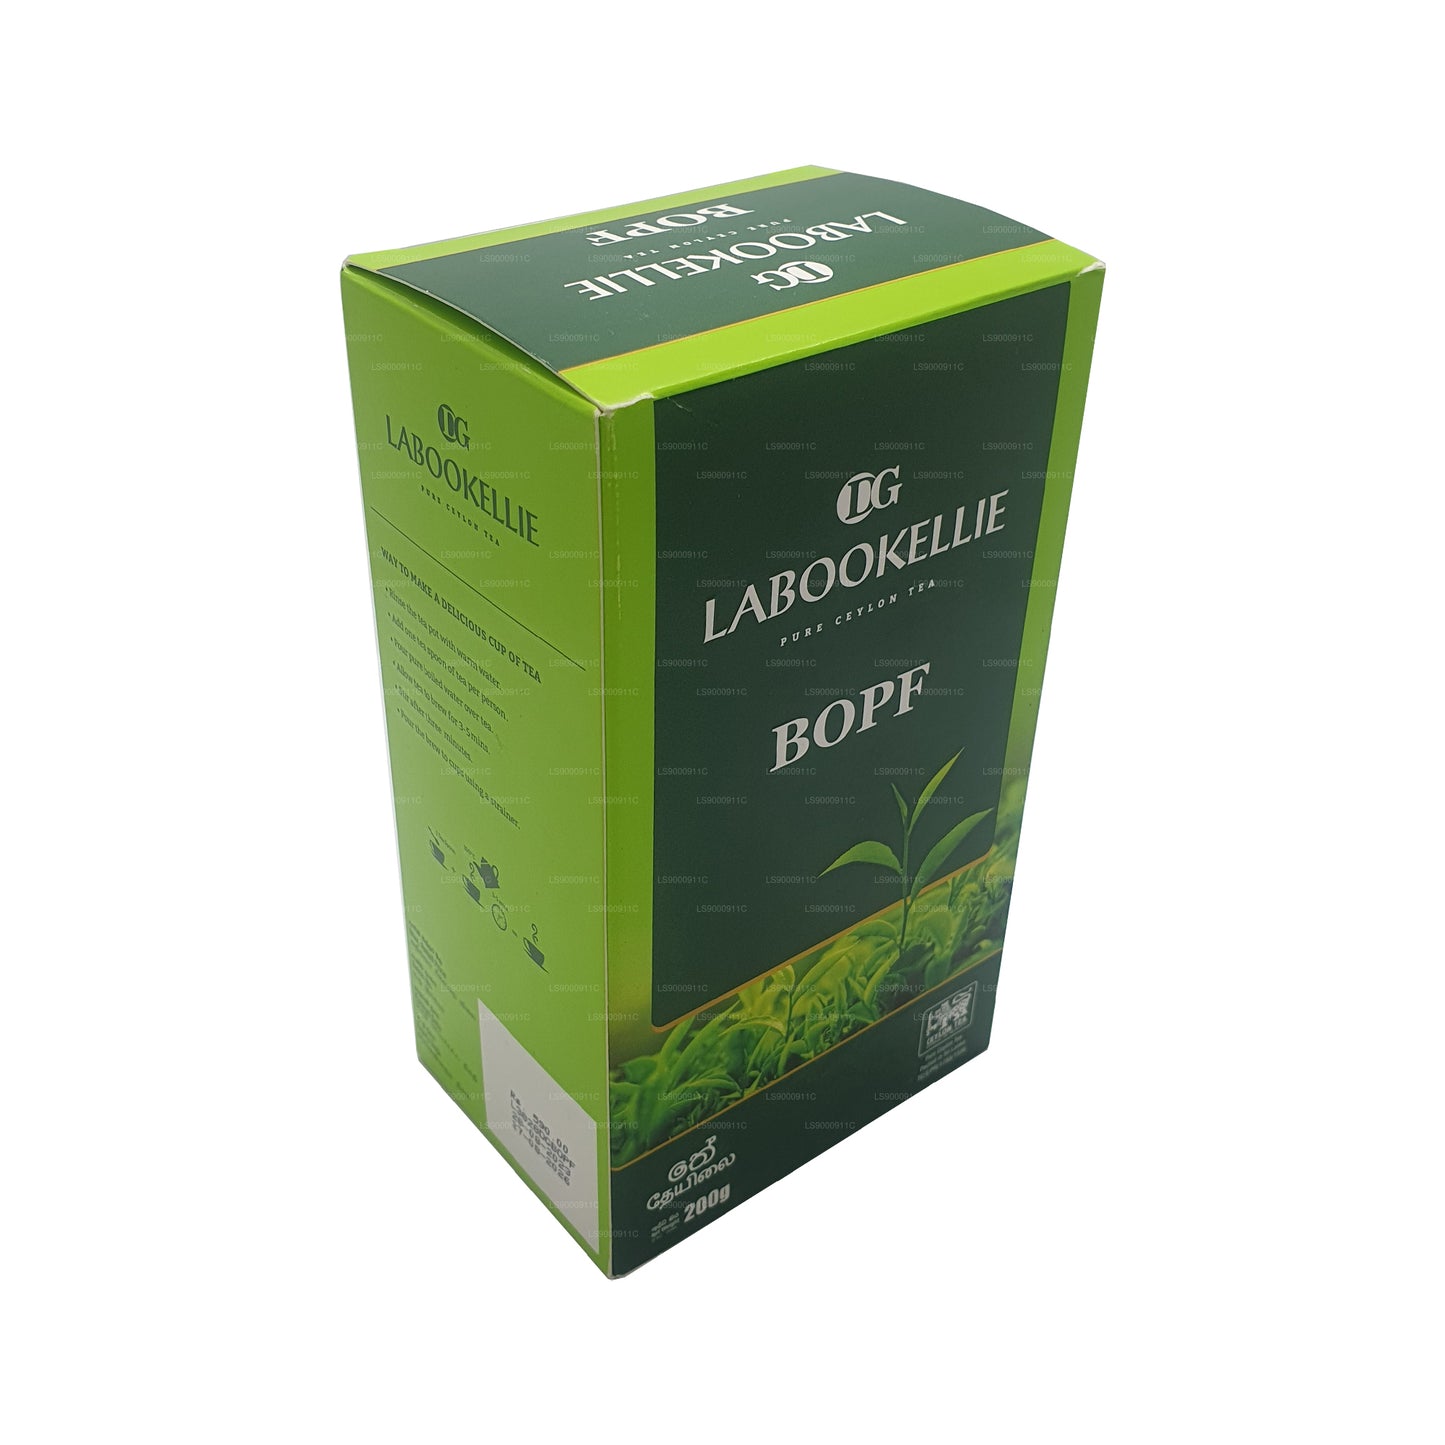 Herbata DG Labookellie BOPF (200g)